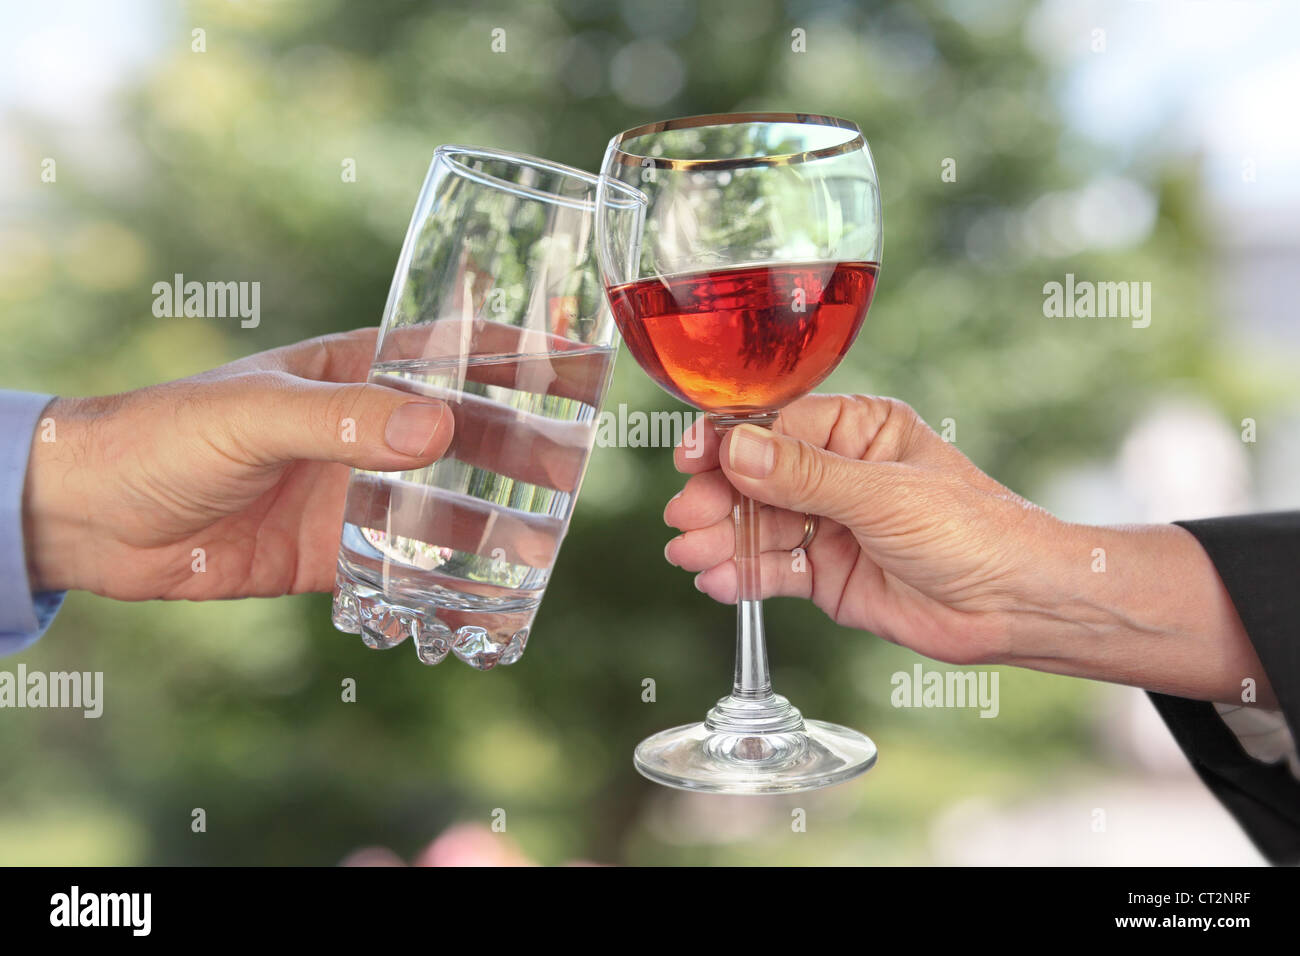 zwei Hände mit Gläser klirren; eine Hand hält ein Glas Wasser, die andere Hand hält ein Glas Alkohol Stockfoto